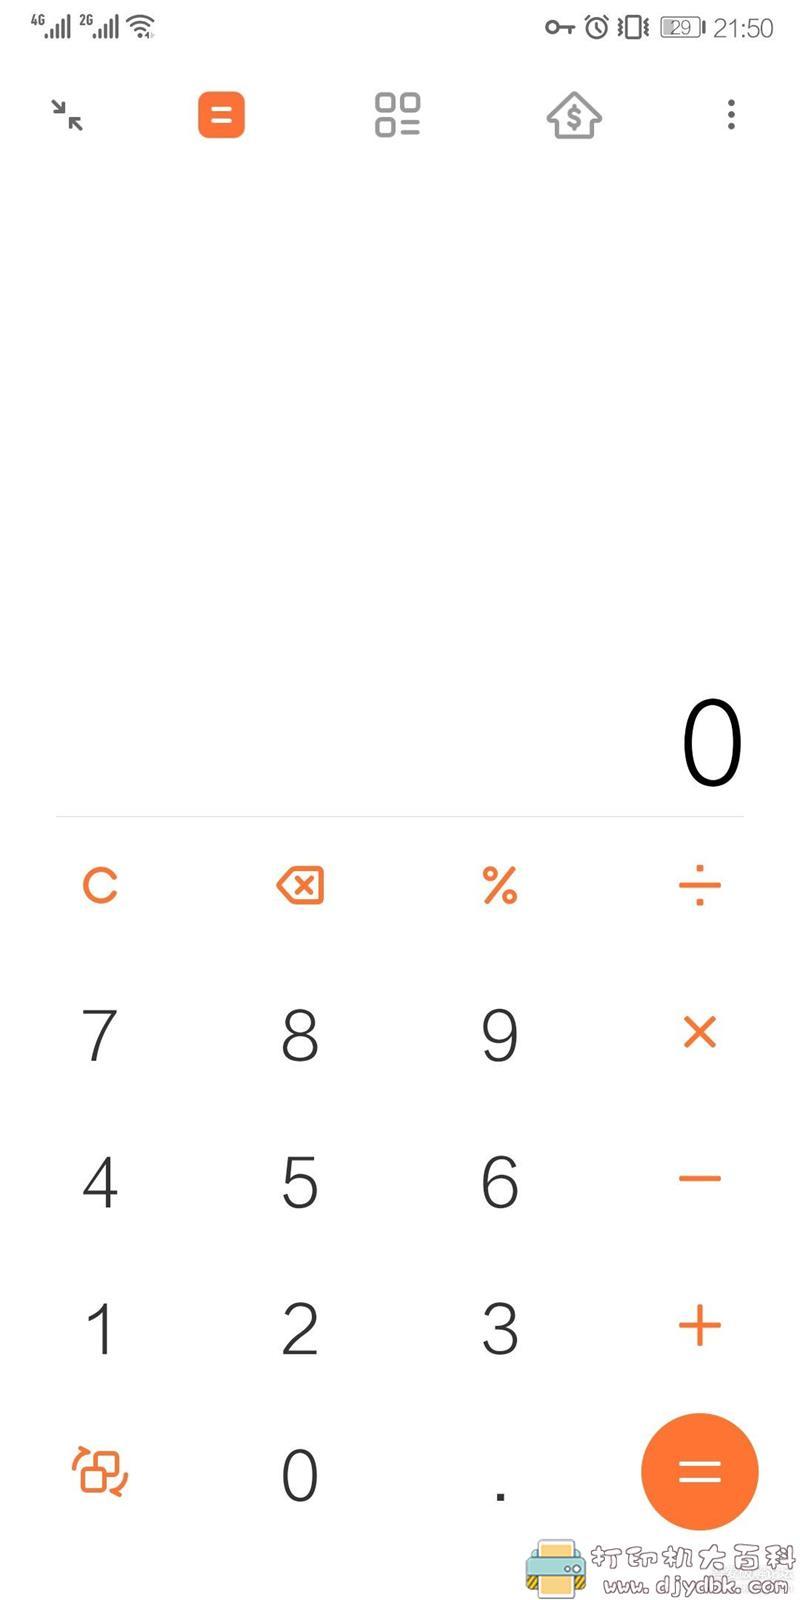 [Android]小米计算器 谷歌商店最新版 最好看最实用的小玩意 配图 No.1